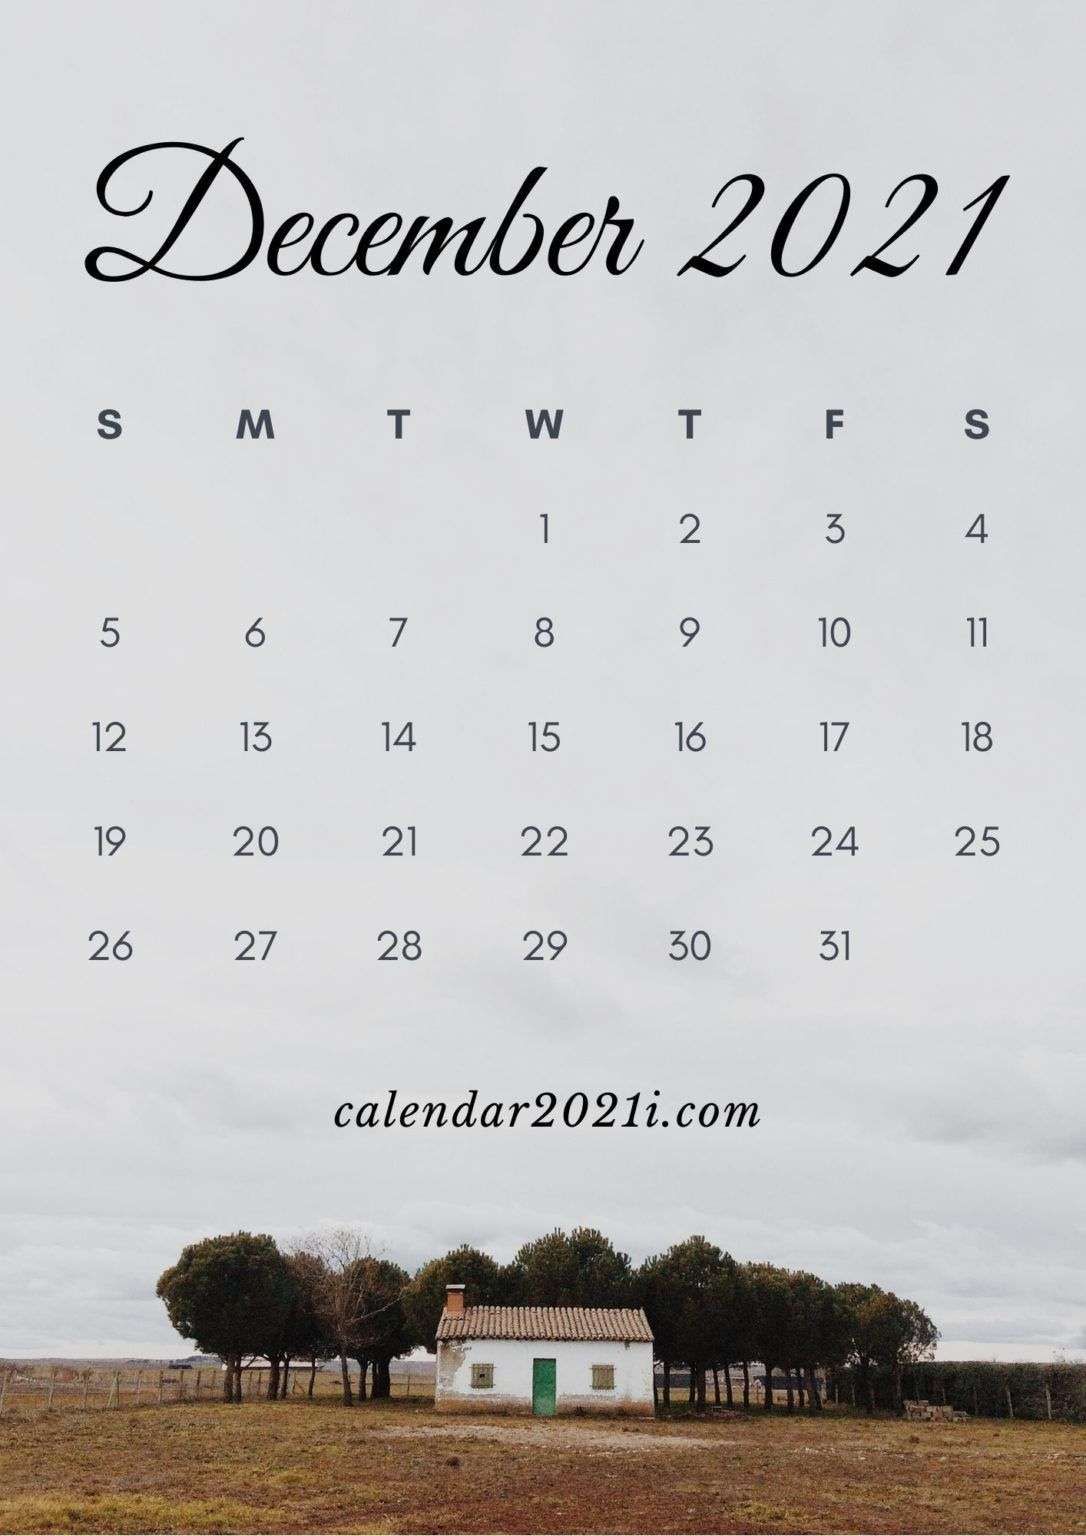 Iphone 2021 Calendar Hd Wallpapers | Calendar 2021 In 2020 December 2021 Calendar Wallpaper